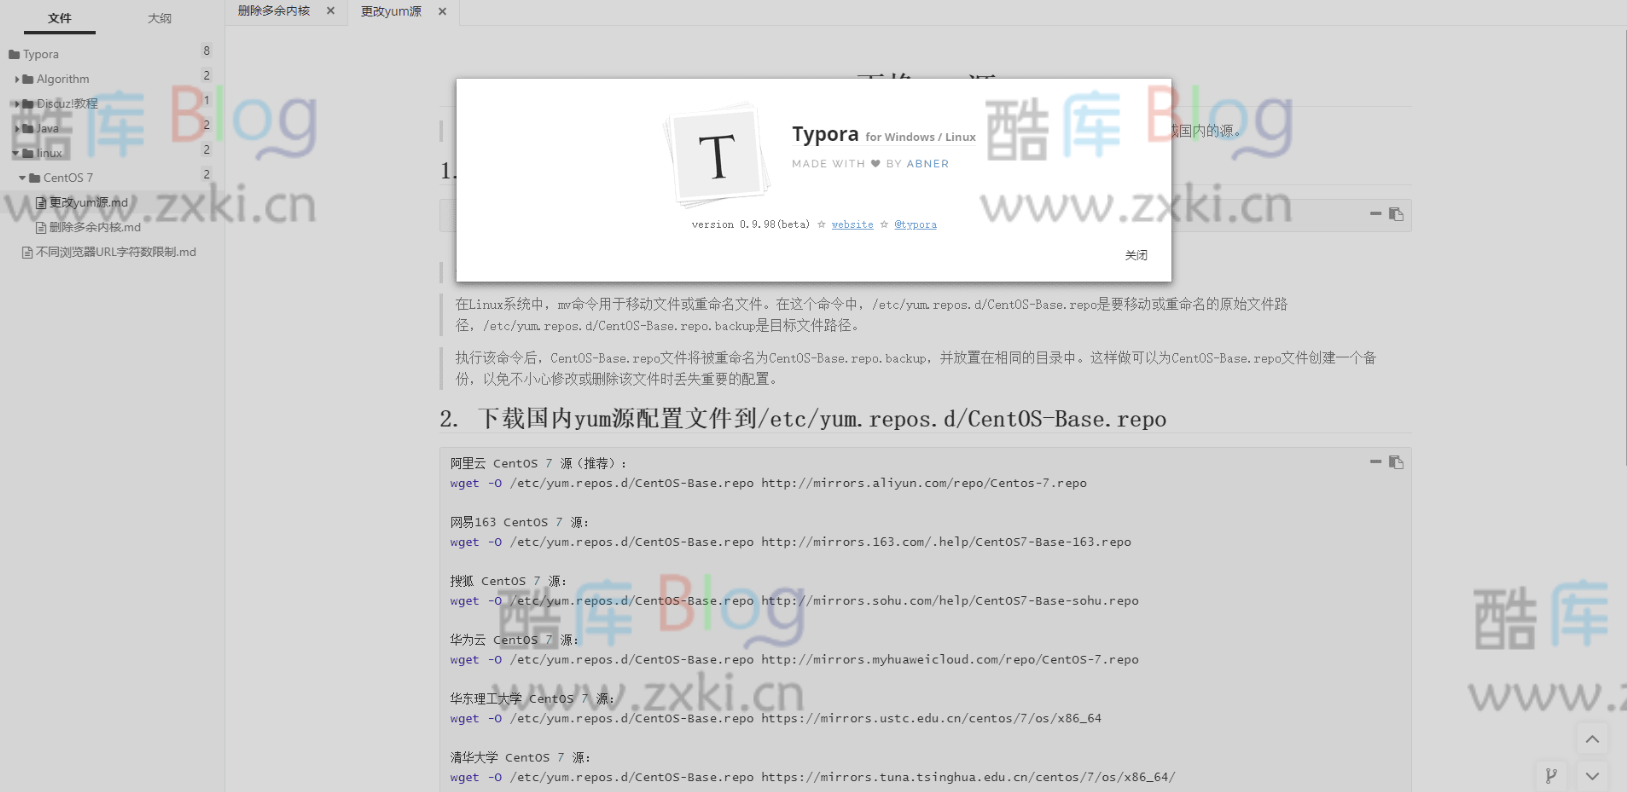 Typora0.9.98(beta)集成插件自整合免安装版 第2张插图